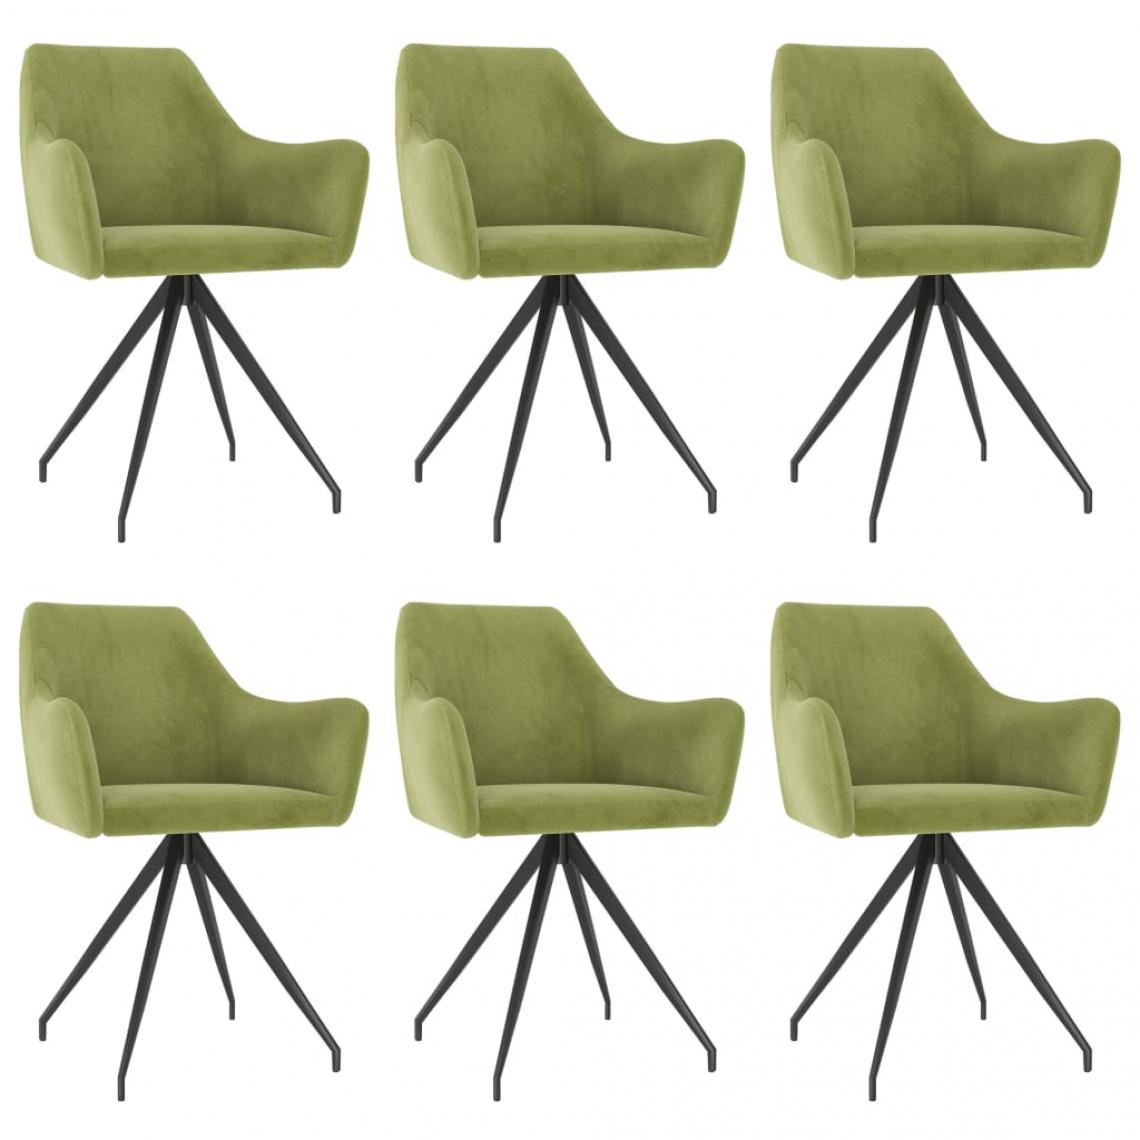 Decoshop26 - Lot de 6 chaises de salle à manger cuisine design moderne velours vert clair CDS022882 - Chaises